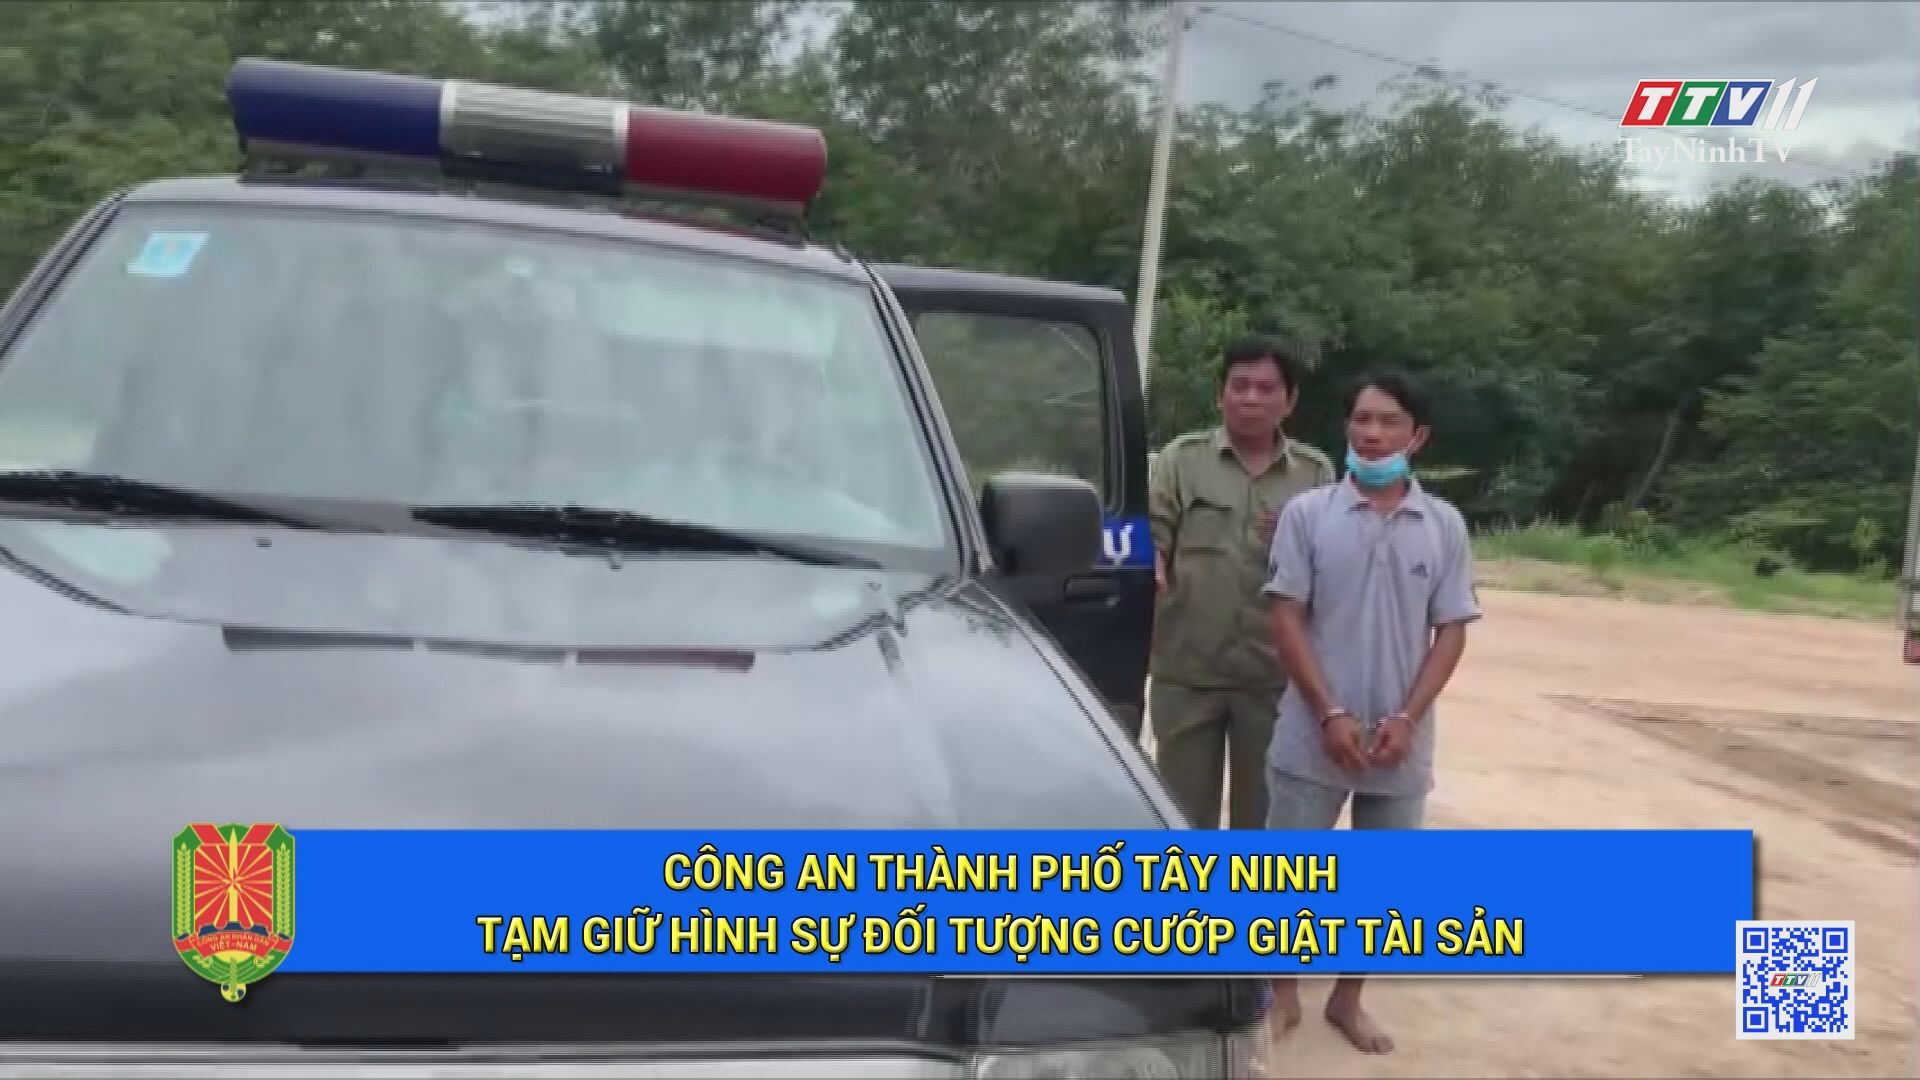 Công an thành phố Tây Ninh tạm giữ hình sự đối tượng c.ư.ớ.p gi.ậ.t tài sản | An ninh Tây Ninh | TayNinhTV